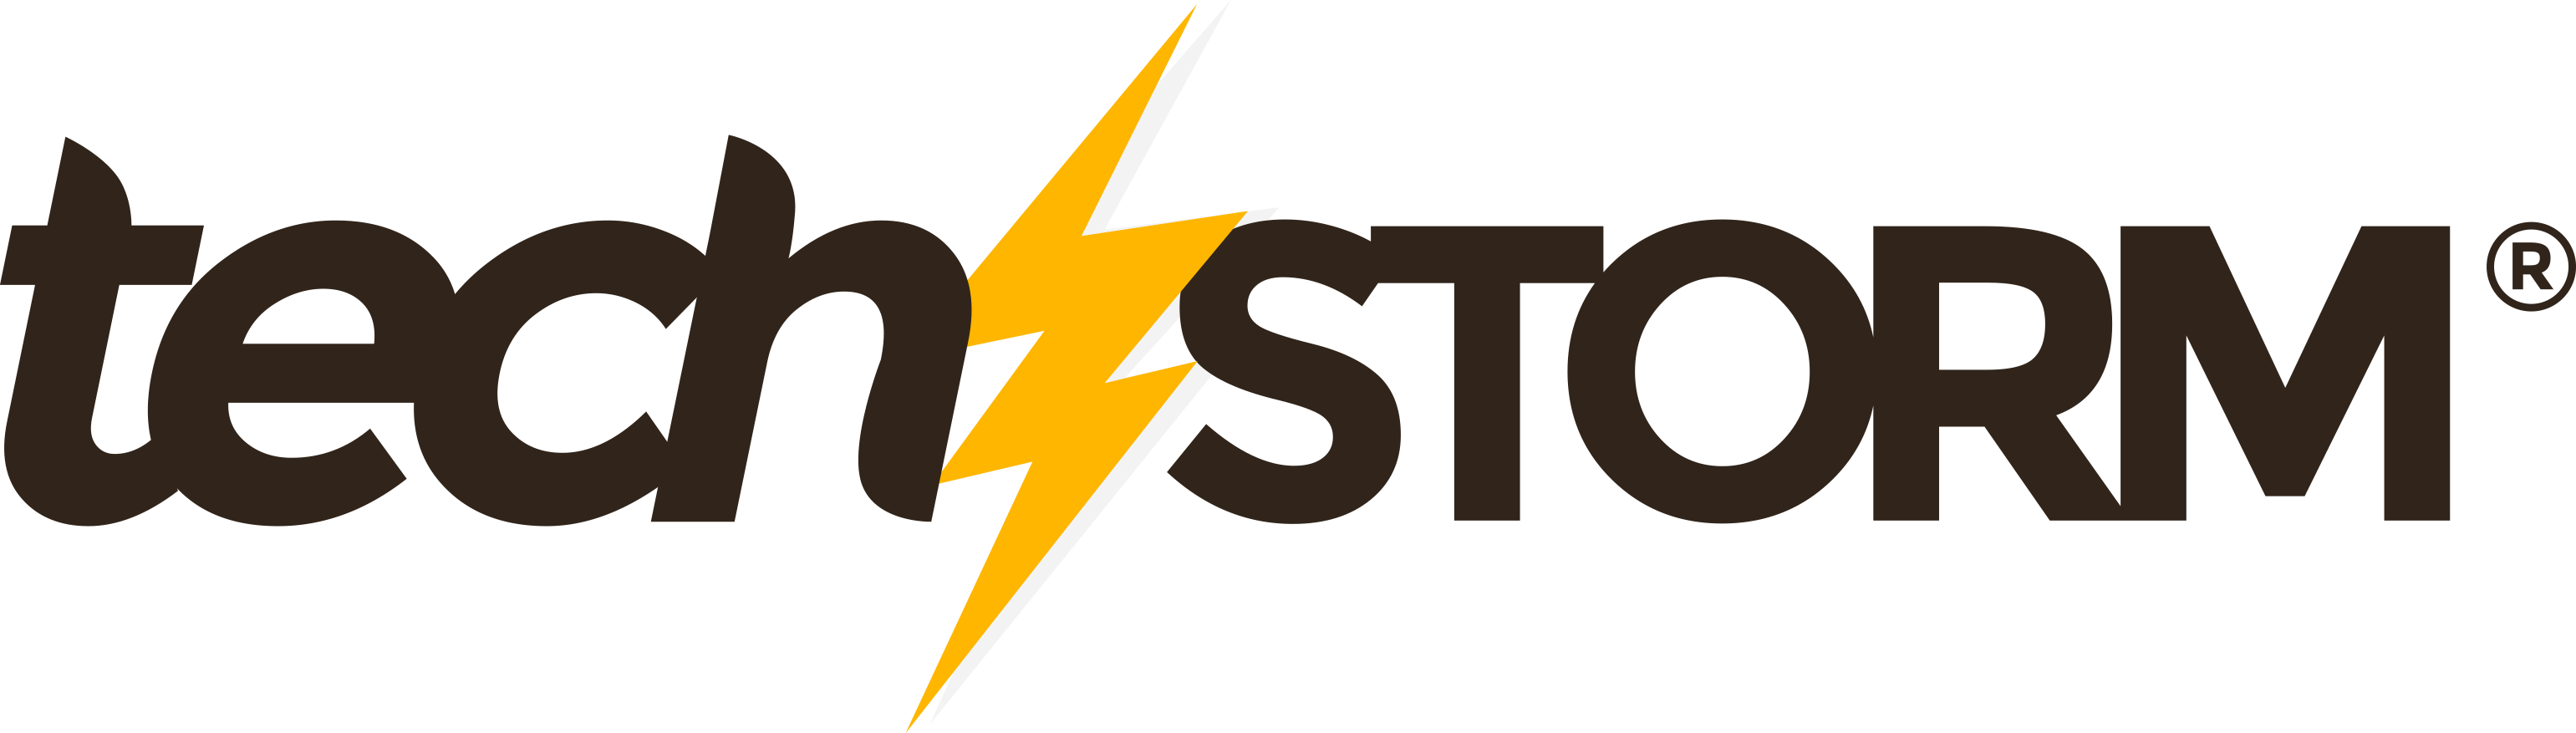 Tech Storm